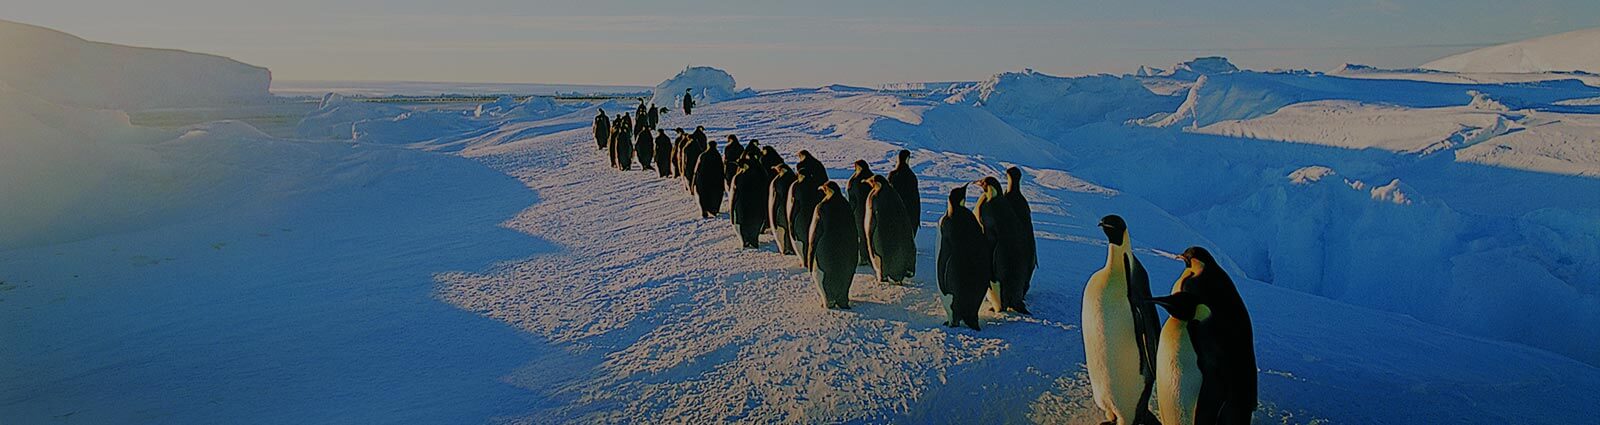 Emperor Penguins marching, Antarctica.